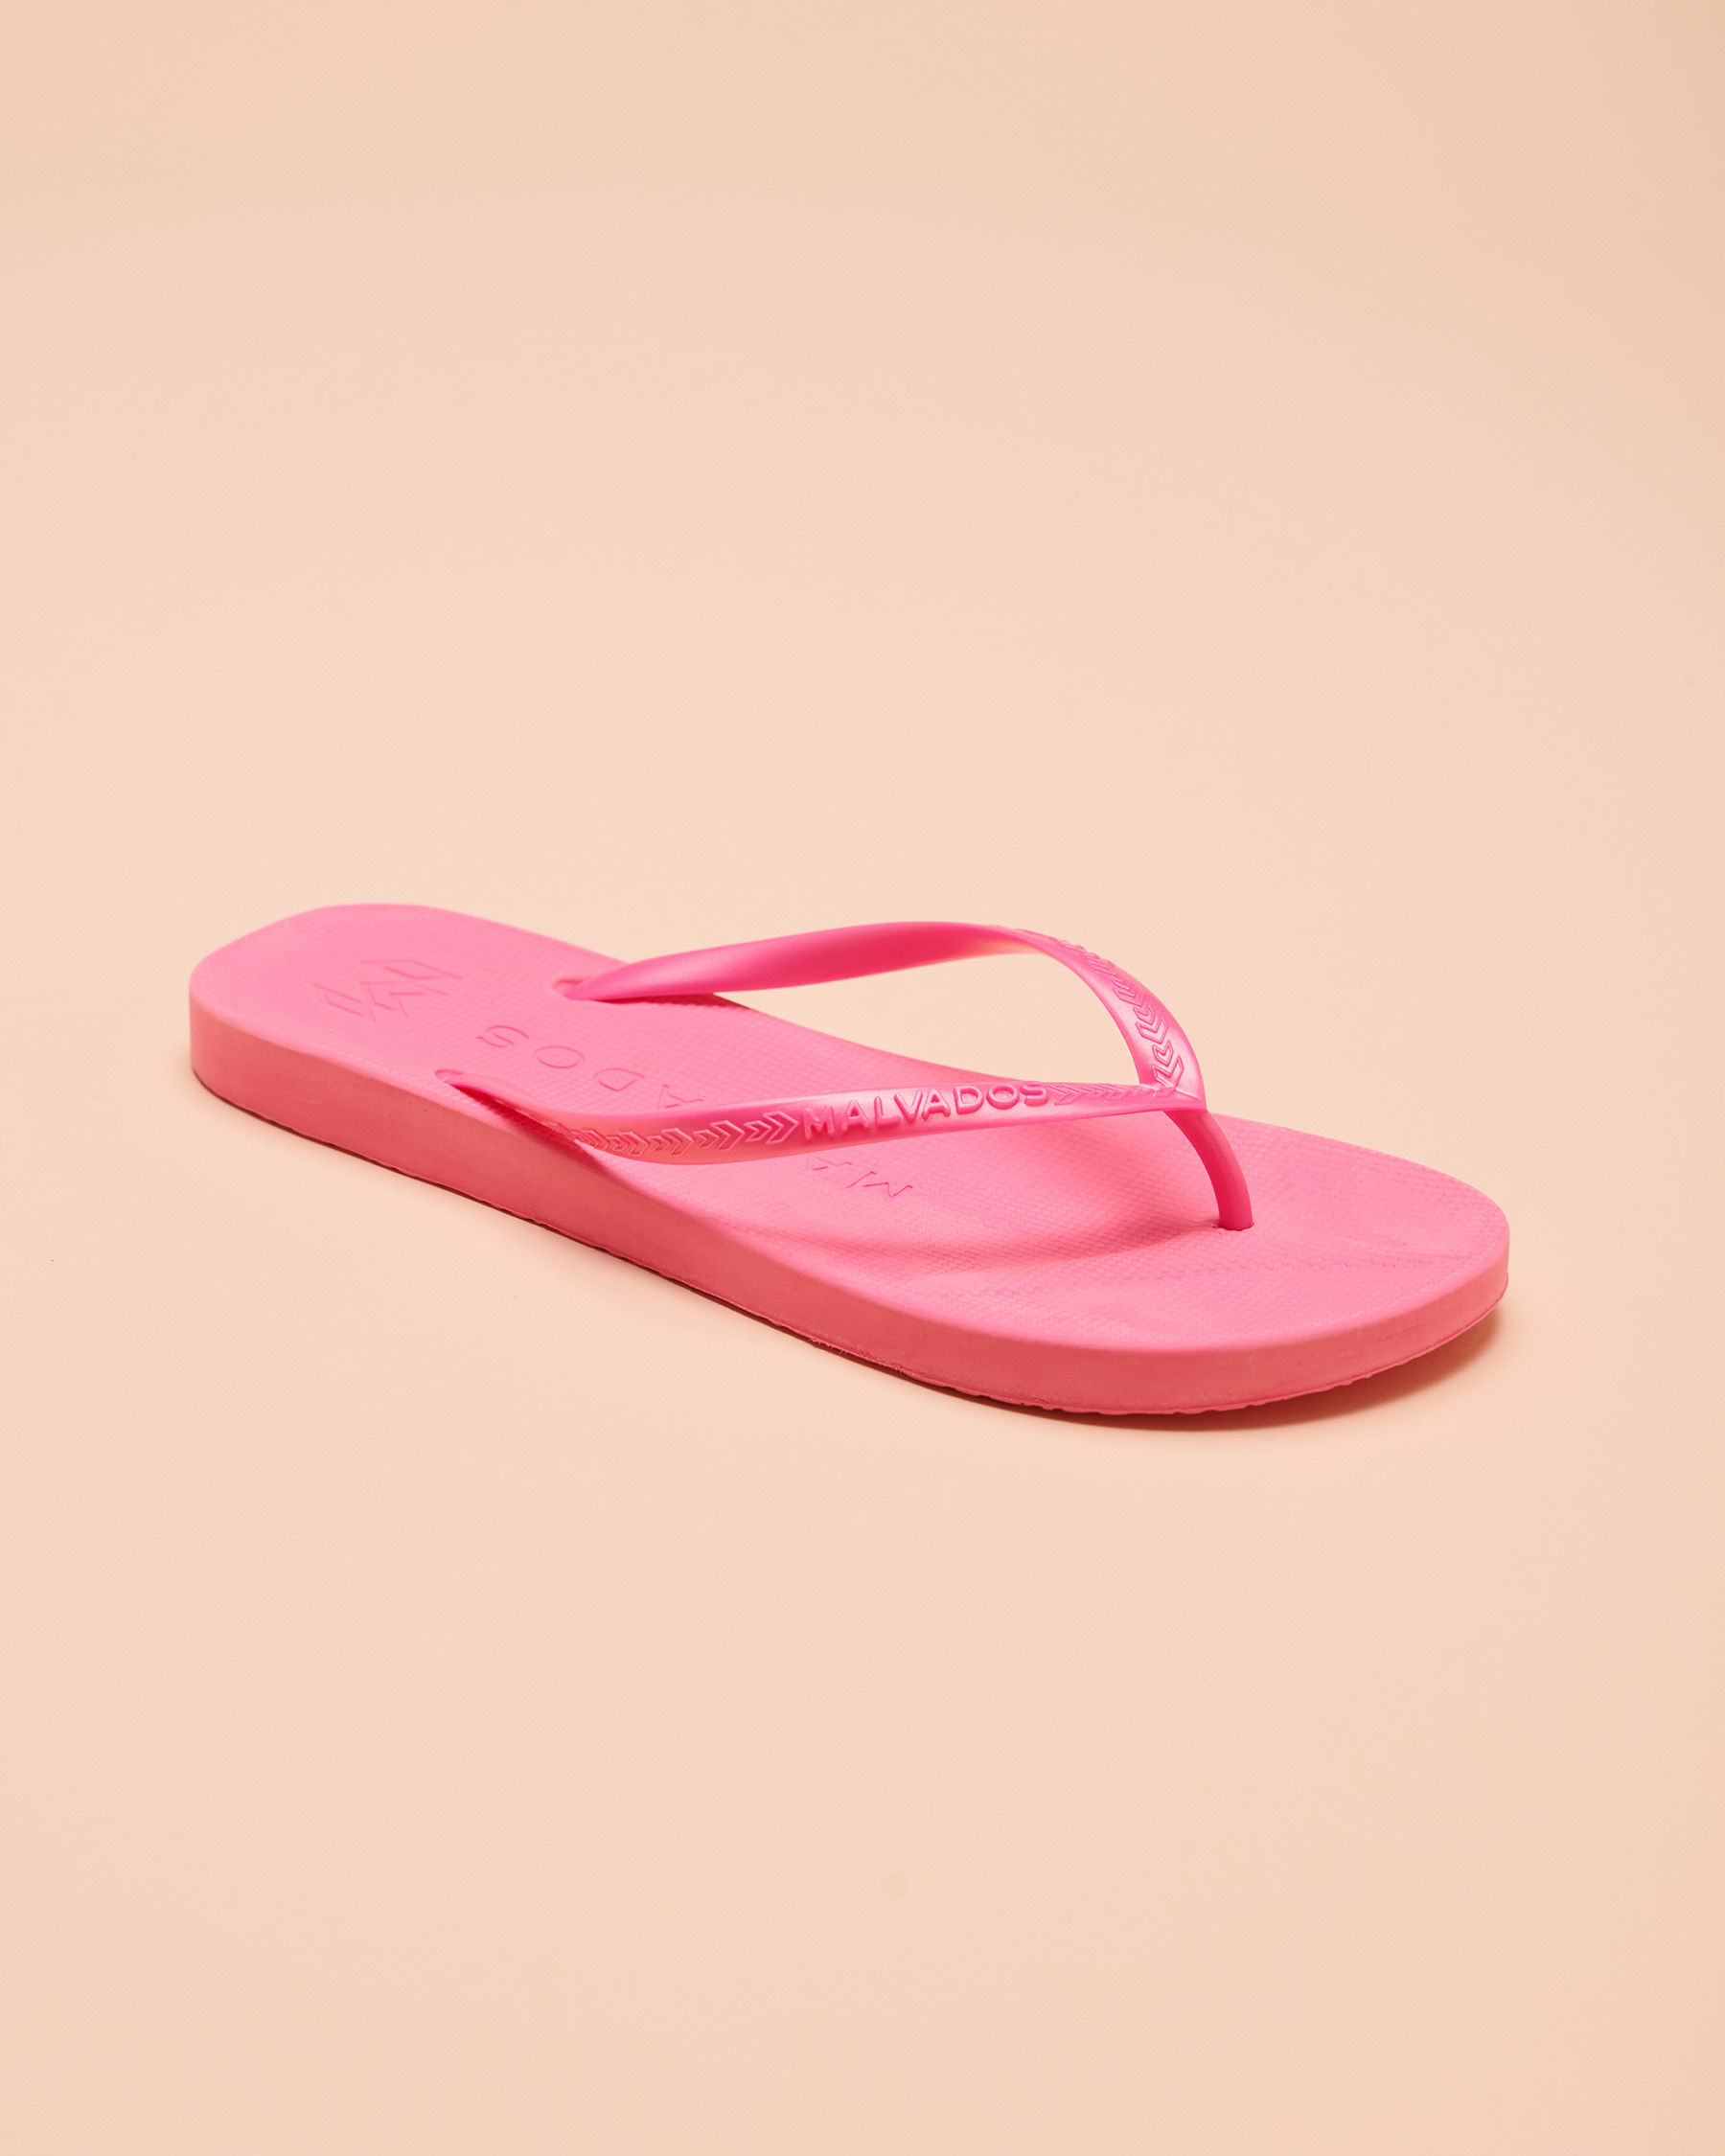 MALVADOS PLAYA Sandal - Pink | Bikini Village